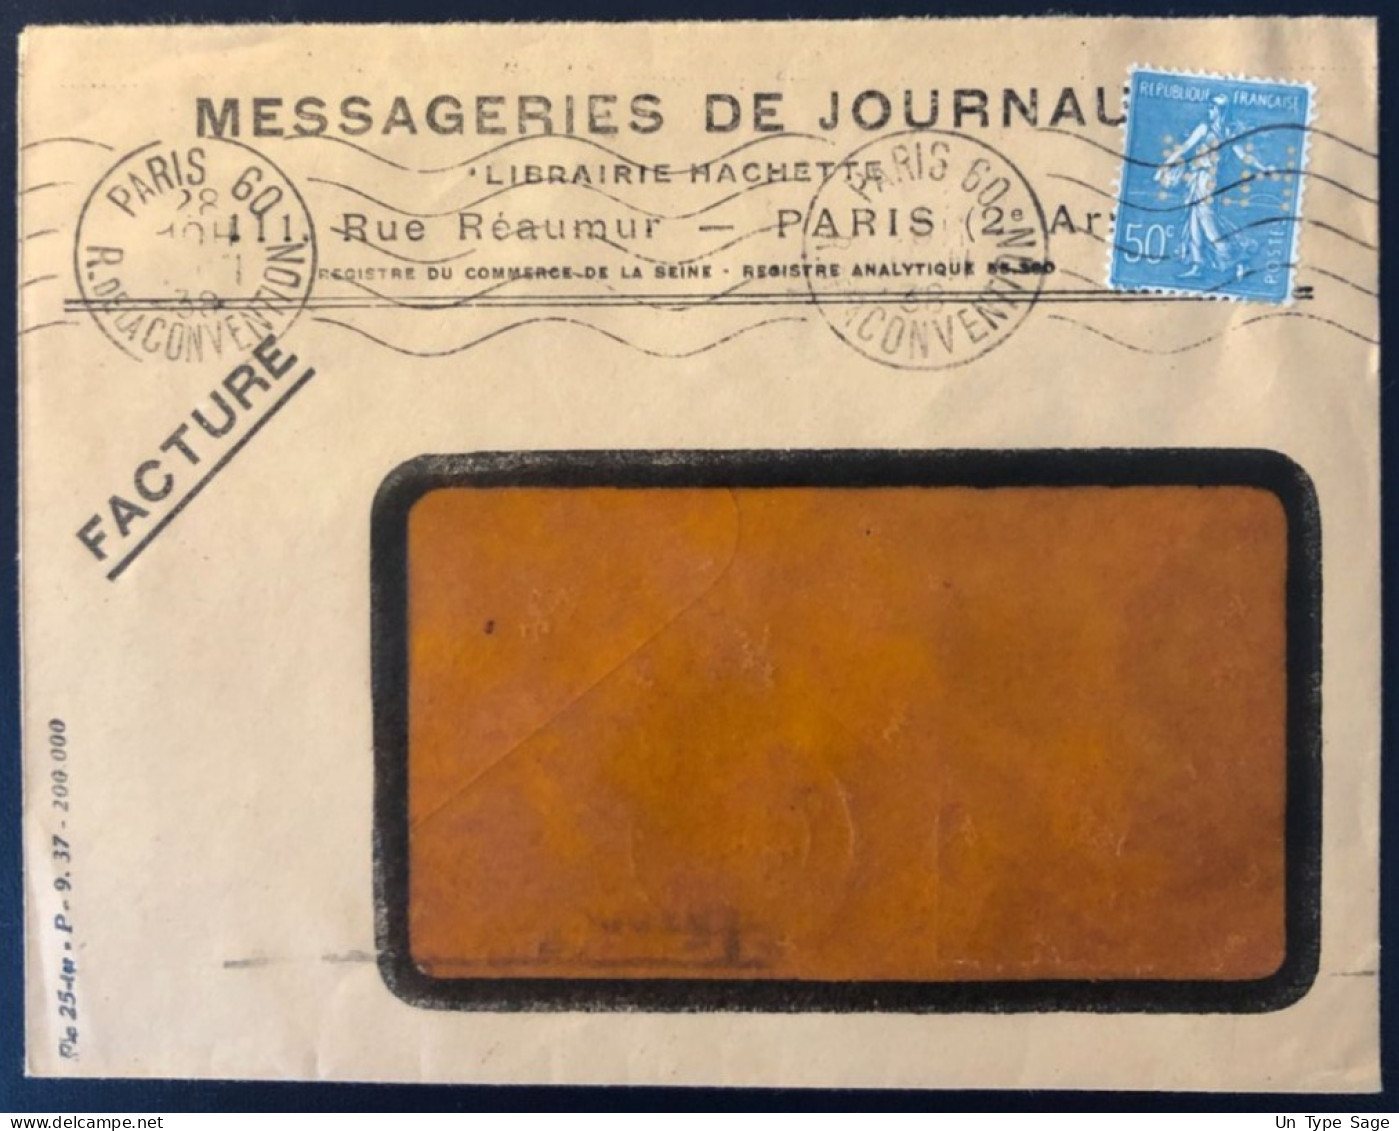 France, Divers Sur Enveloppe, Perforé MESSAGERIES DE JOURNAUX 1938  - (B1729) - Covers & Documents